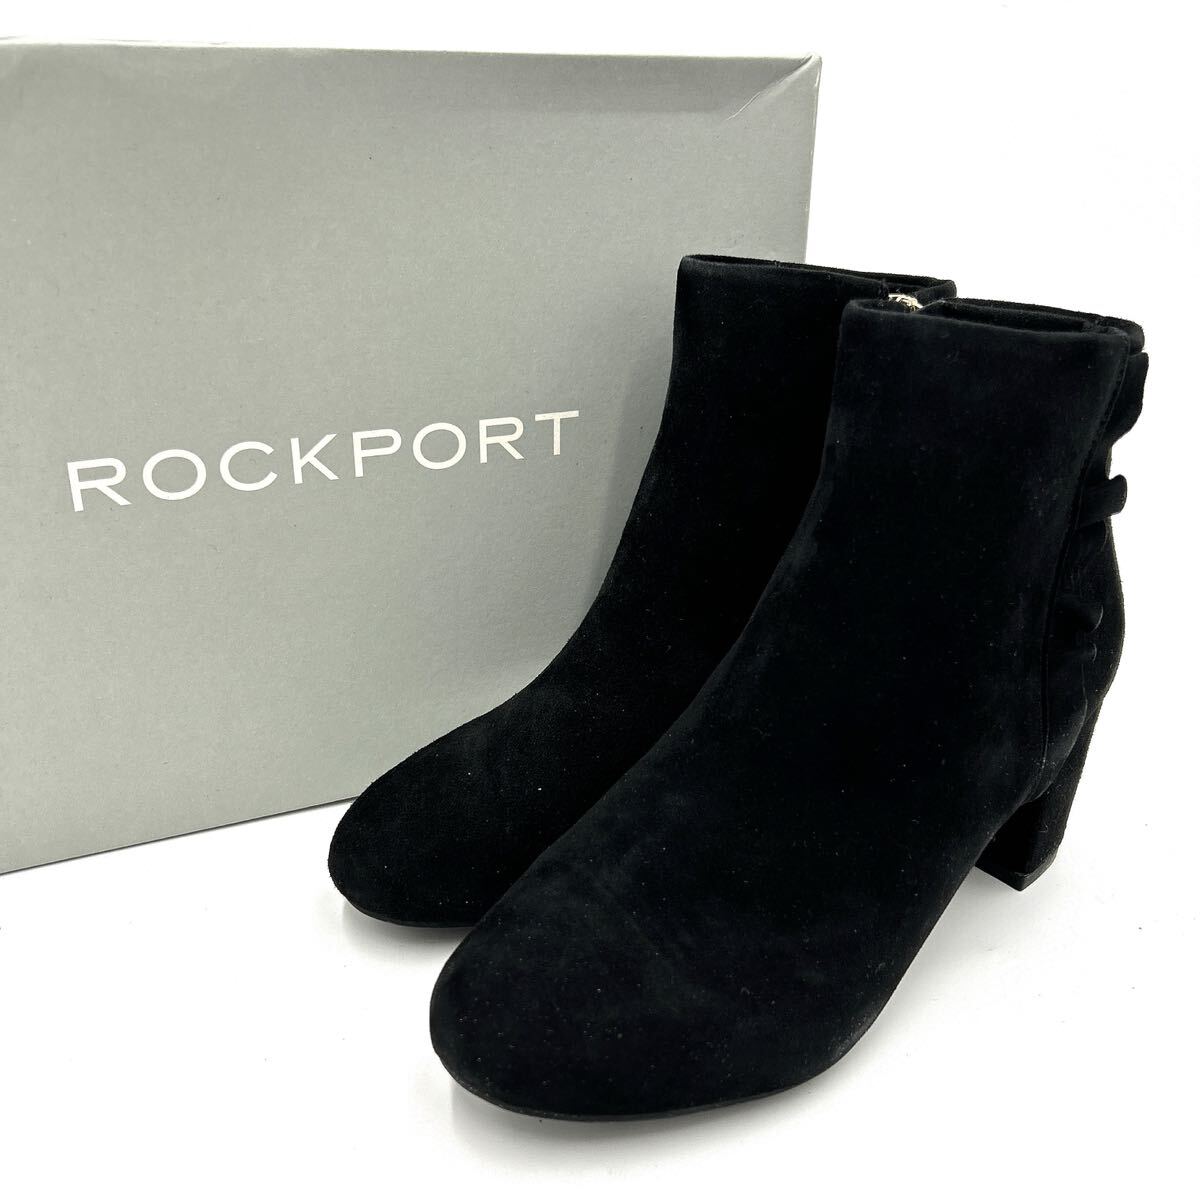 ■ 良品 / 箱付き '履き心地抜群' ROCKPORT ロックポート SUEDE サイドジップ ショートブーツ / ブーティ 22.5cm レディース 婦人靴 BLACK_画像1